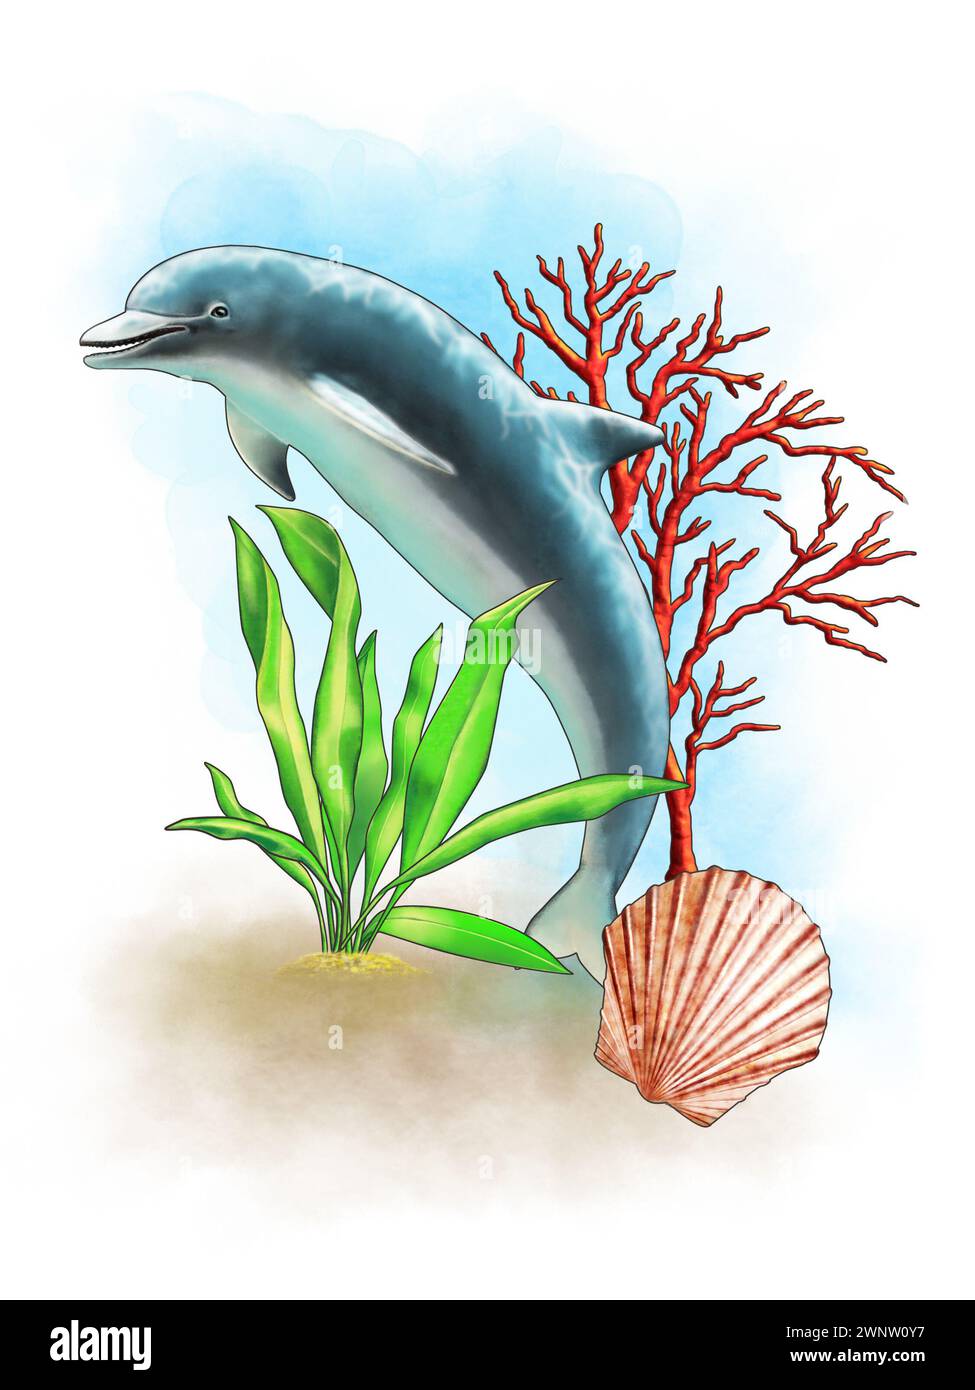 Composizioni a tema marino che includono un delfino, una conchiglia, un corallo e alcune alghe. Illustrazione digitale. Foto Stock